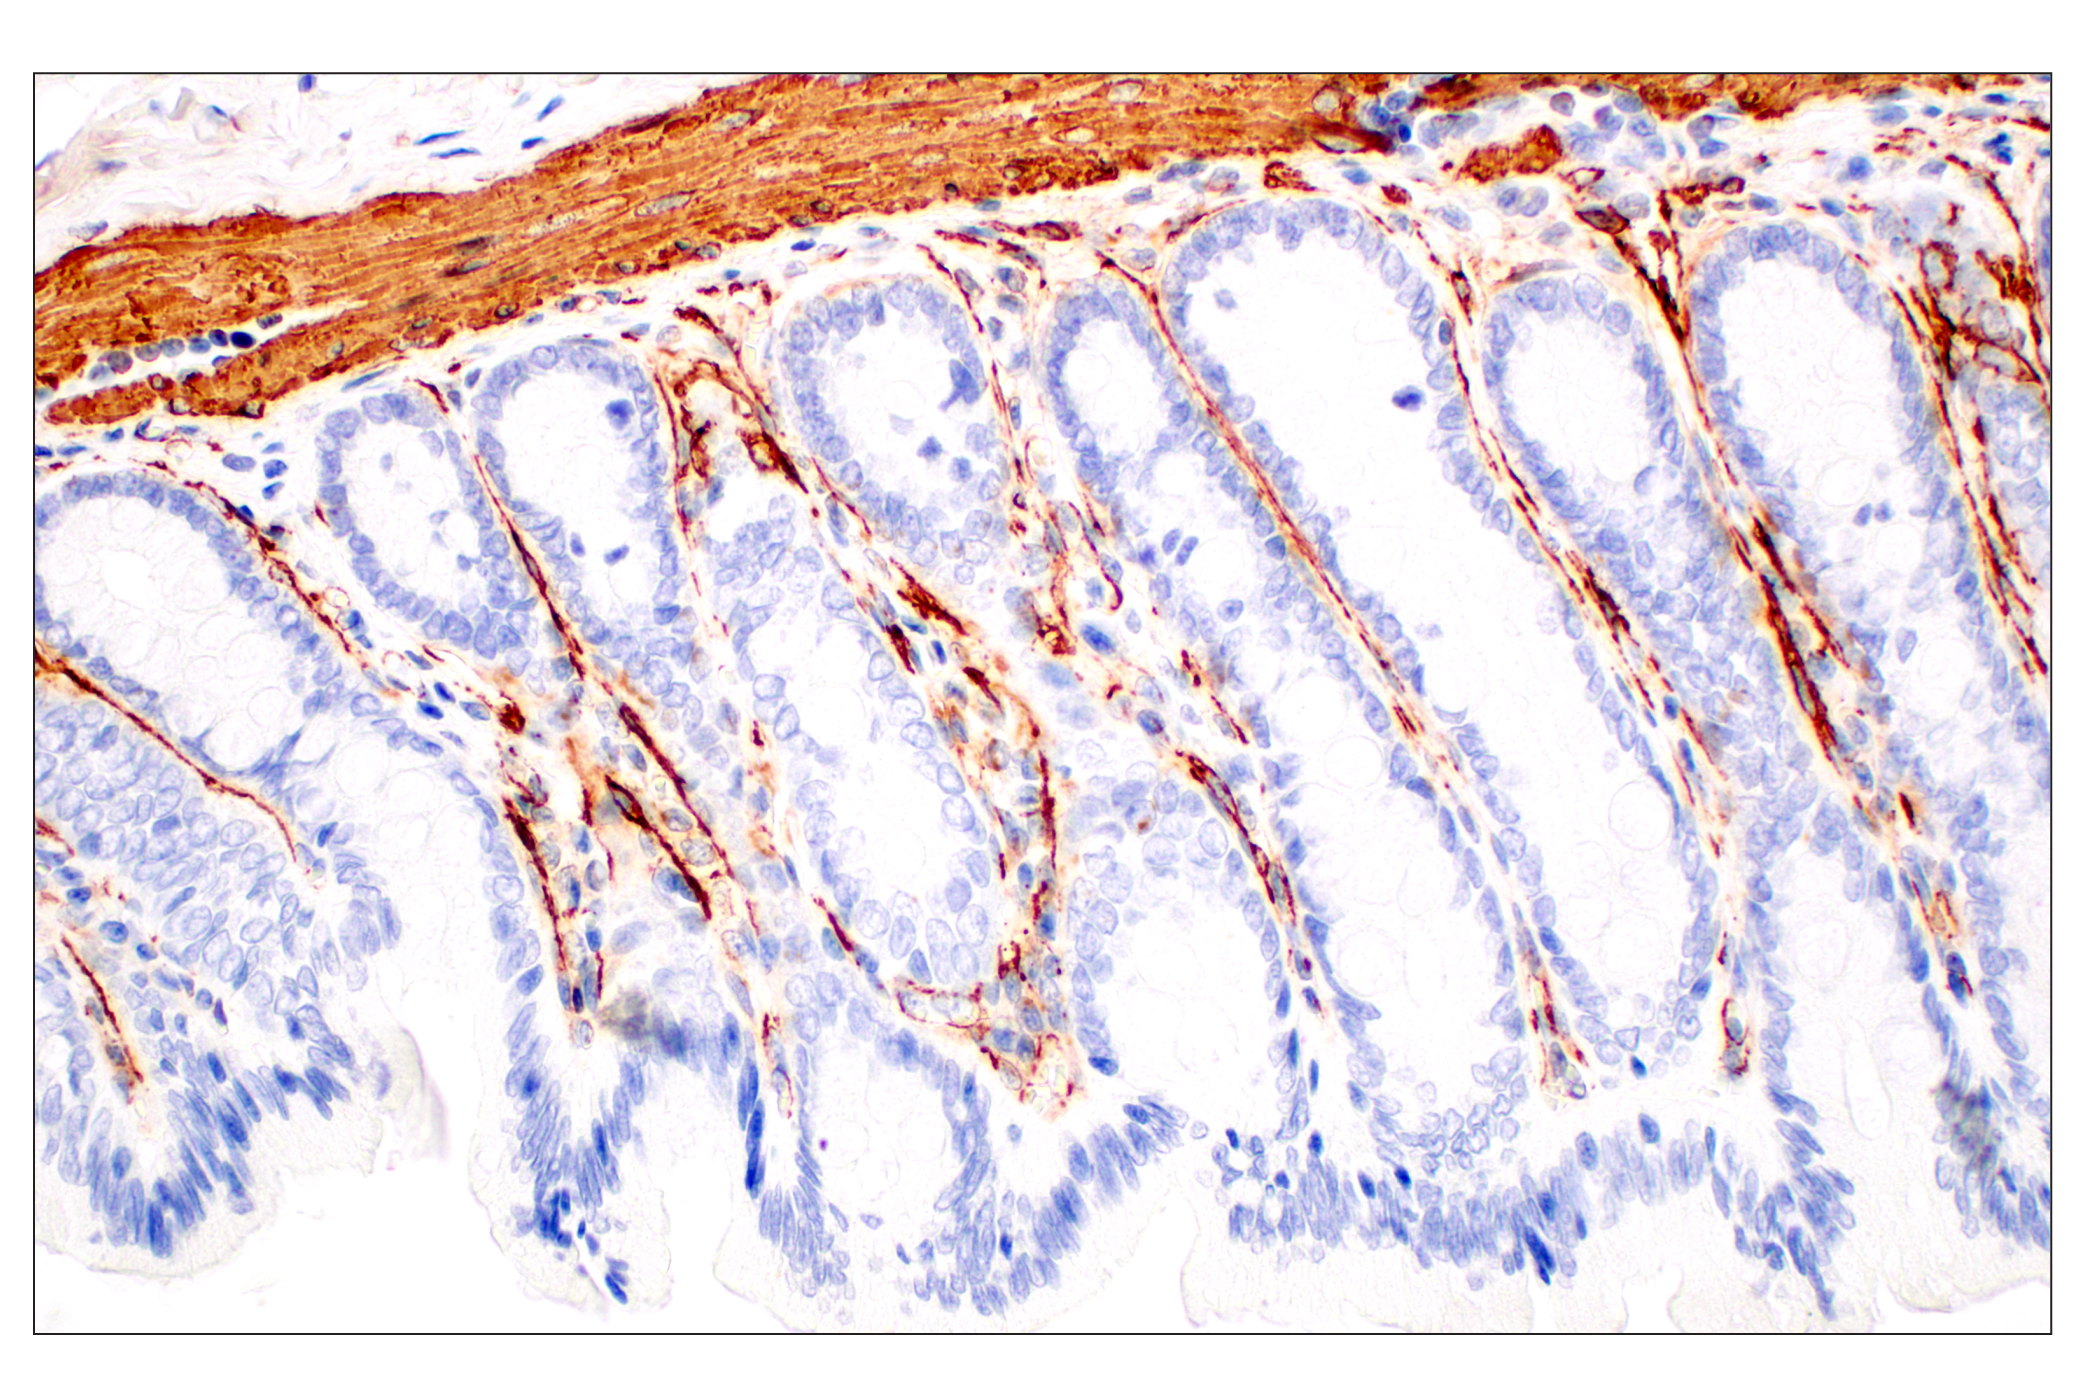  Image 49: TGF-β Fibrosis Pathway Antibody Sampler Kit